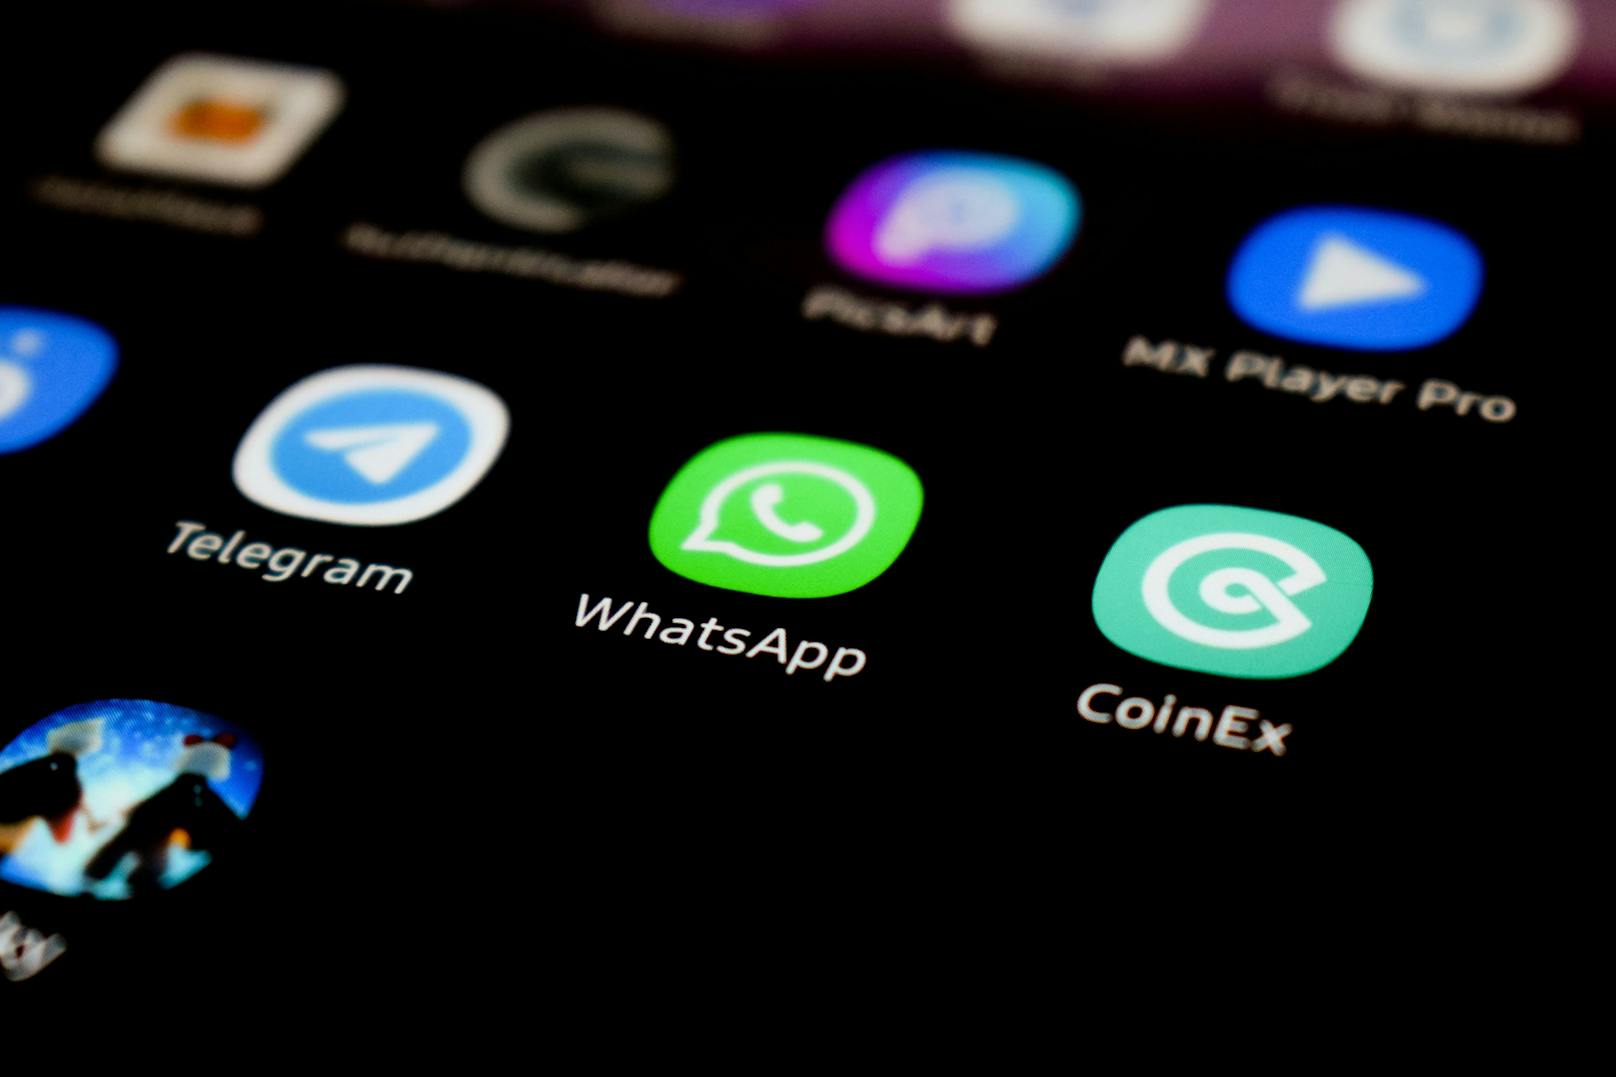 WhatsApp plant die Einführung einer neuen Funktion – und wird damit eine Art soziales Netzwerk.